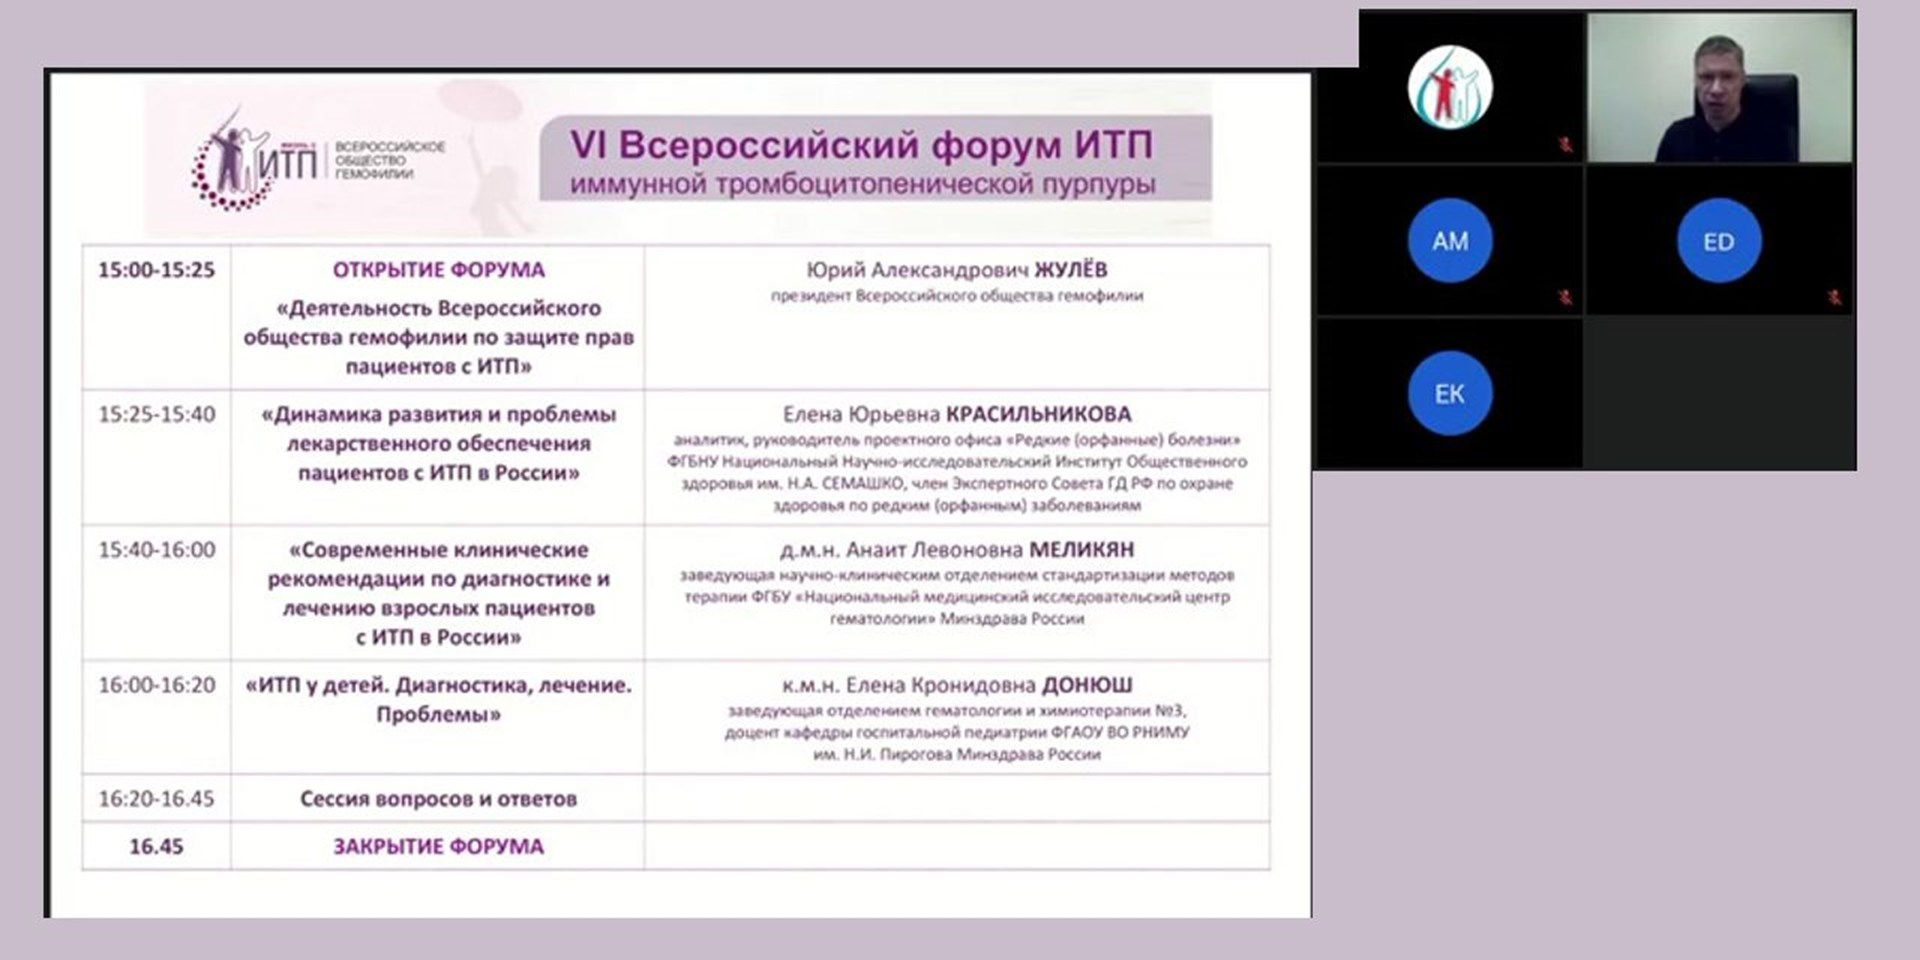 17.11.2021 Состоялся VI Всероссийский форум имунной тромбоцитопенической пурпуры (ИТП)